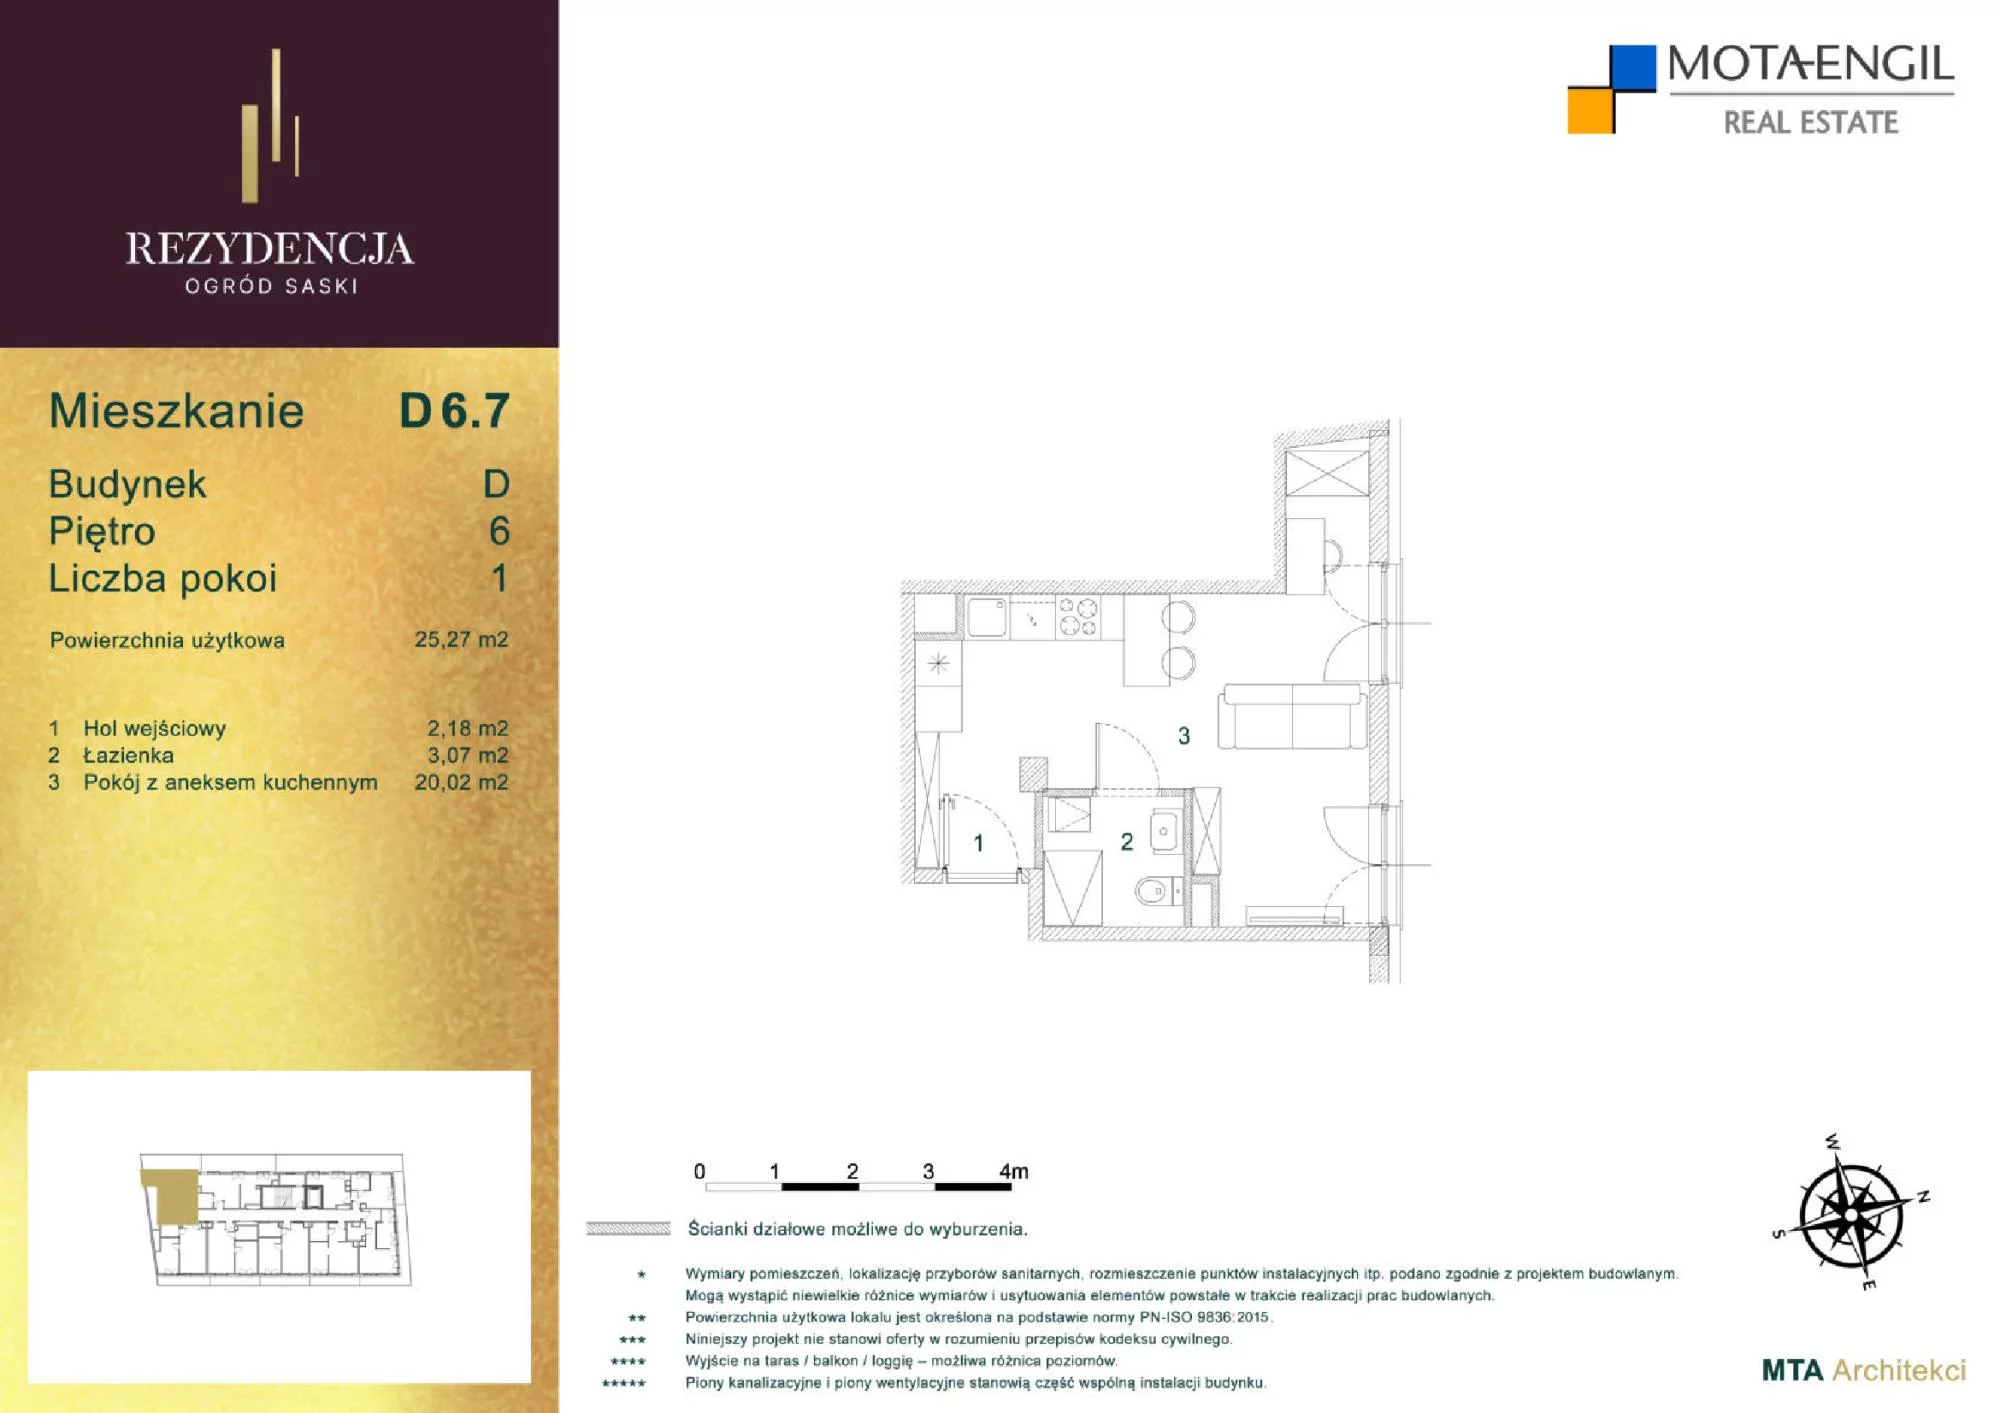 Mieszkanie 25,27 m², piętro 6, oferta nr D6.7, Rezydencja Ogród Saski, Lublin, Wieniawa, ul. Jasna 7, 7A